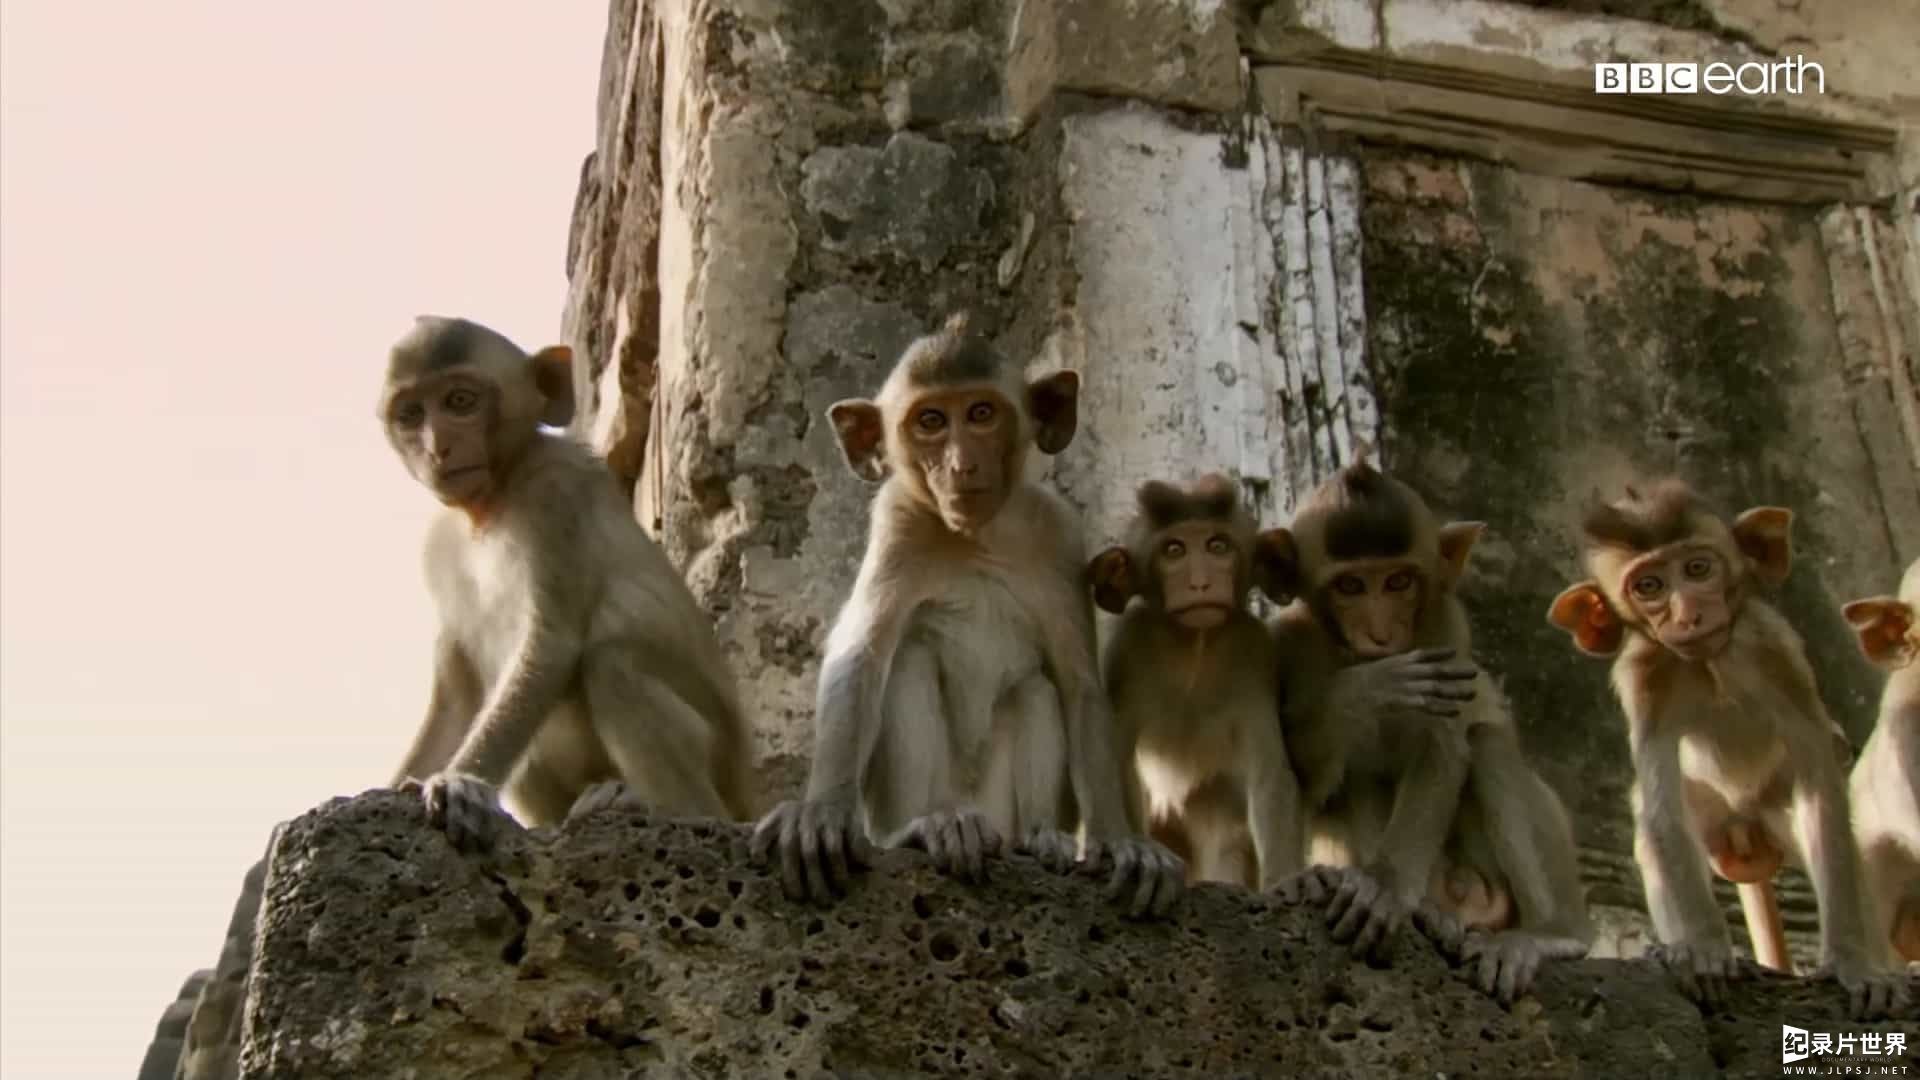 精选系列/BBC纪录片《猴子揭秘/猴子大观 Monkeys Revealed》全3集 